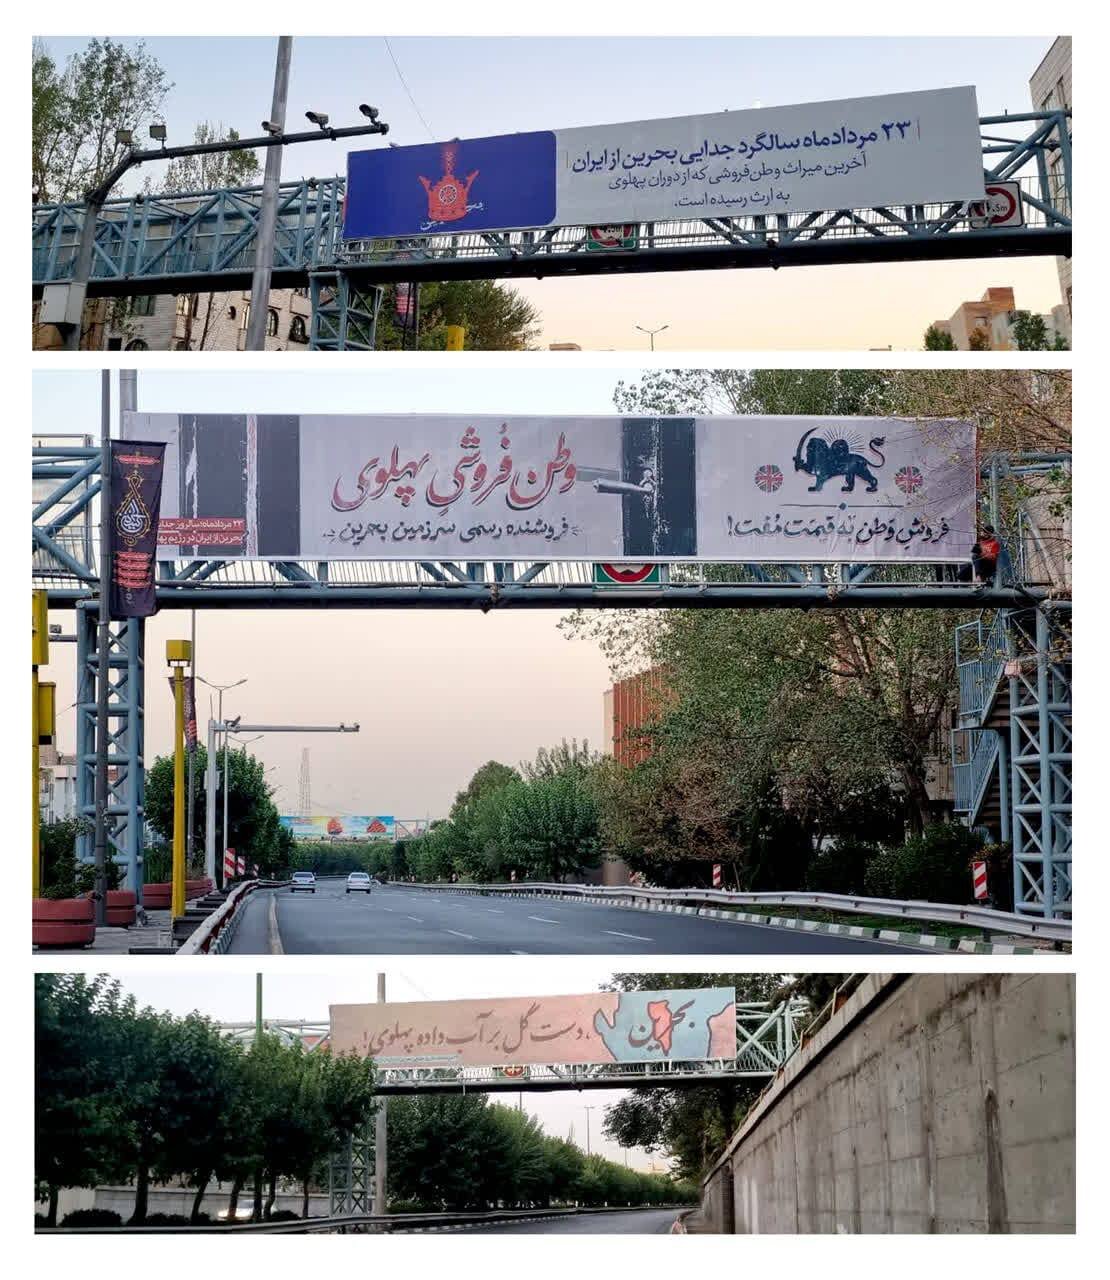 نصب بیلبوردهای علیه پهلوی‌ها در سطح شهر تهران درباره جدایی بحرین از ایران